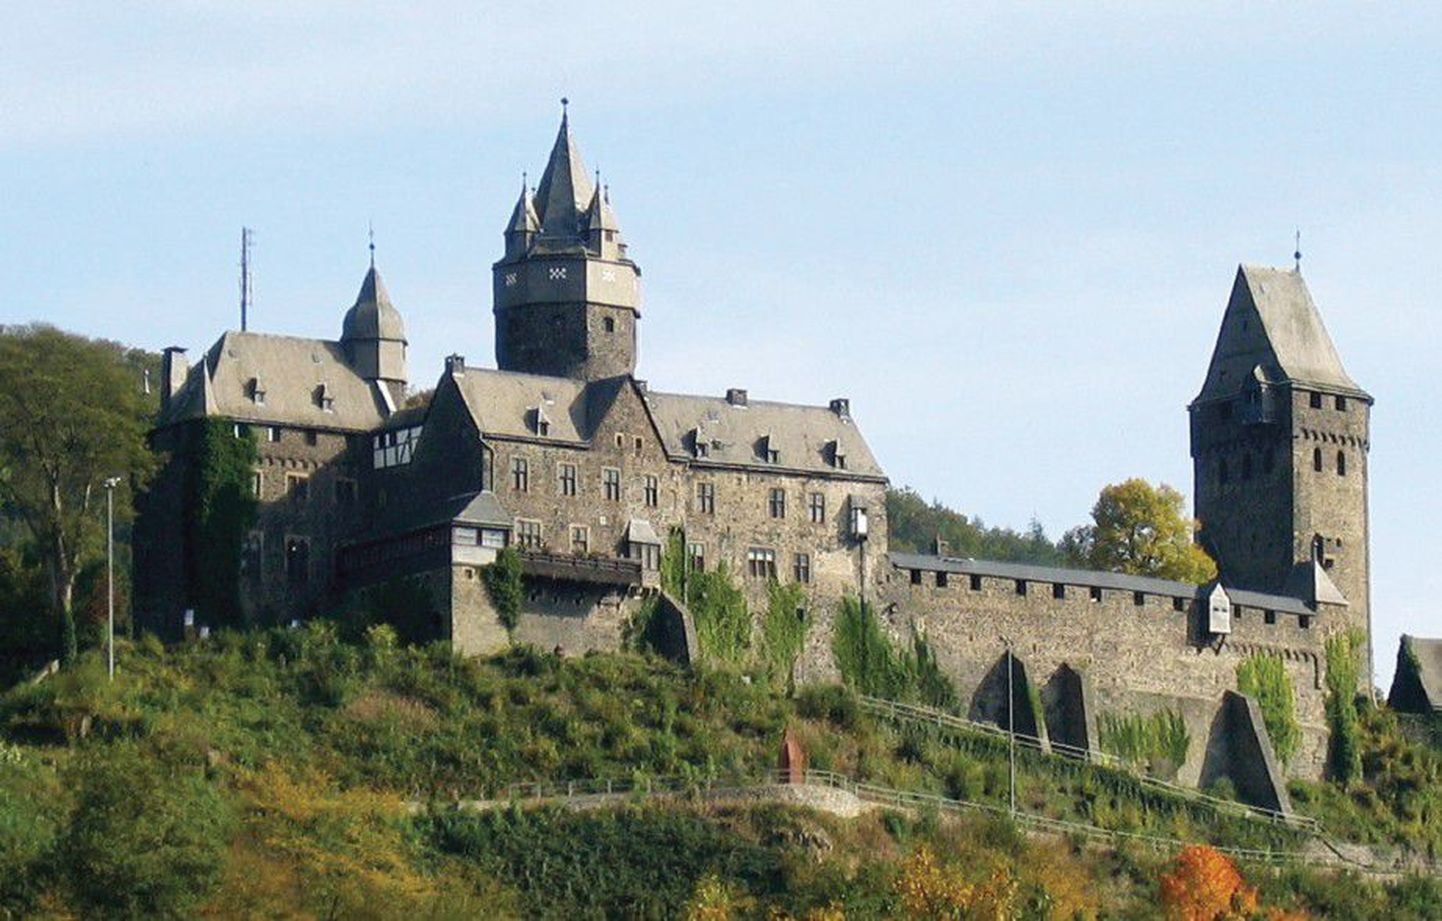 Самый первый хостел в мире появился в 1912 году в Германии. Учитель Рихард Ширманн открыл его для небогатых путешествующих групп школьников в средневековом замке Альтена, в котором теперь работает музей.